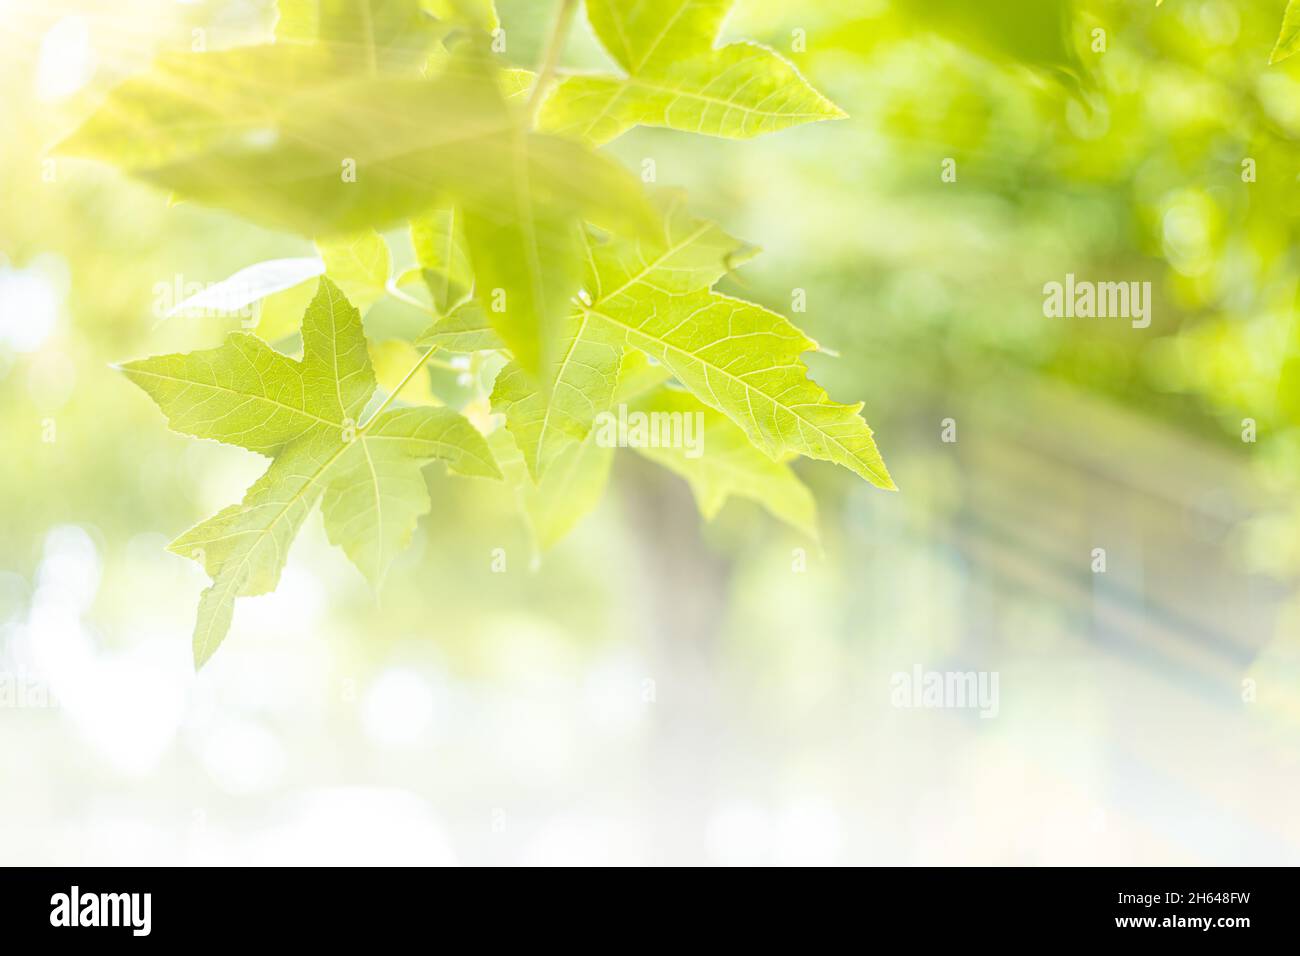 Blur grünen Blatt Ahornbaum frische Natur Frühling Saison hellen bunten natürlichen Hintergrund Stockfoto